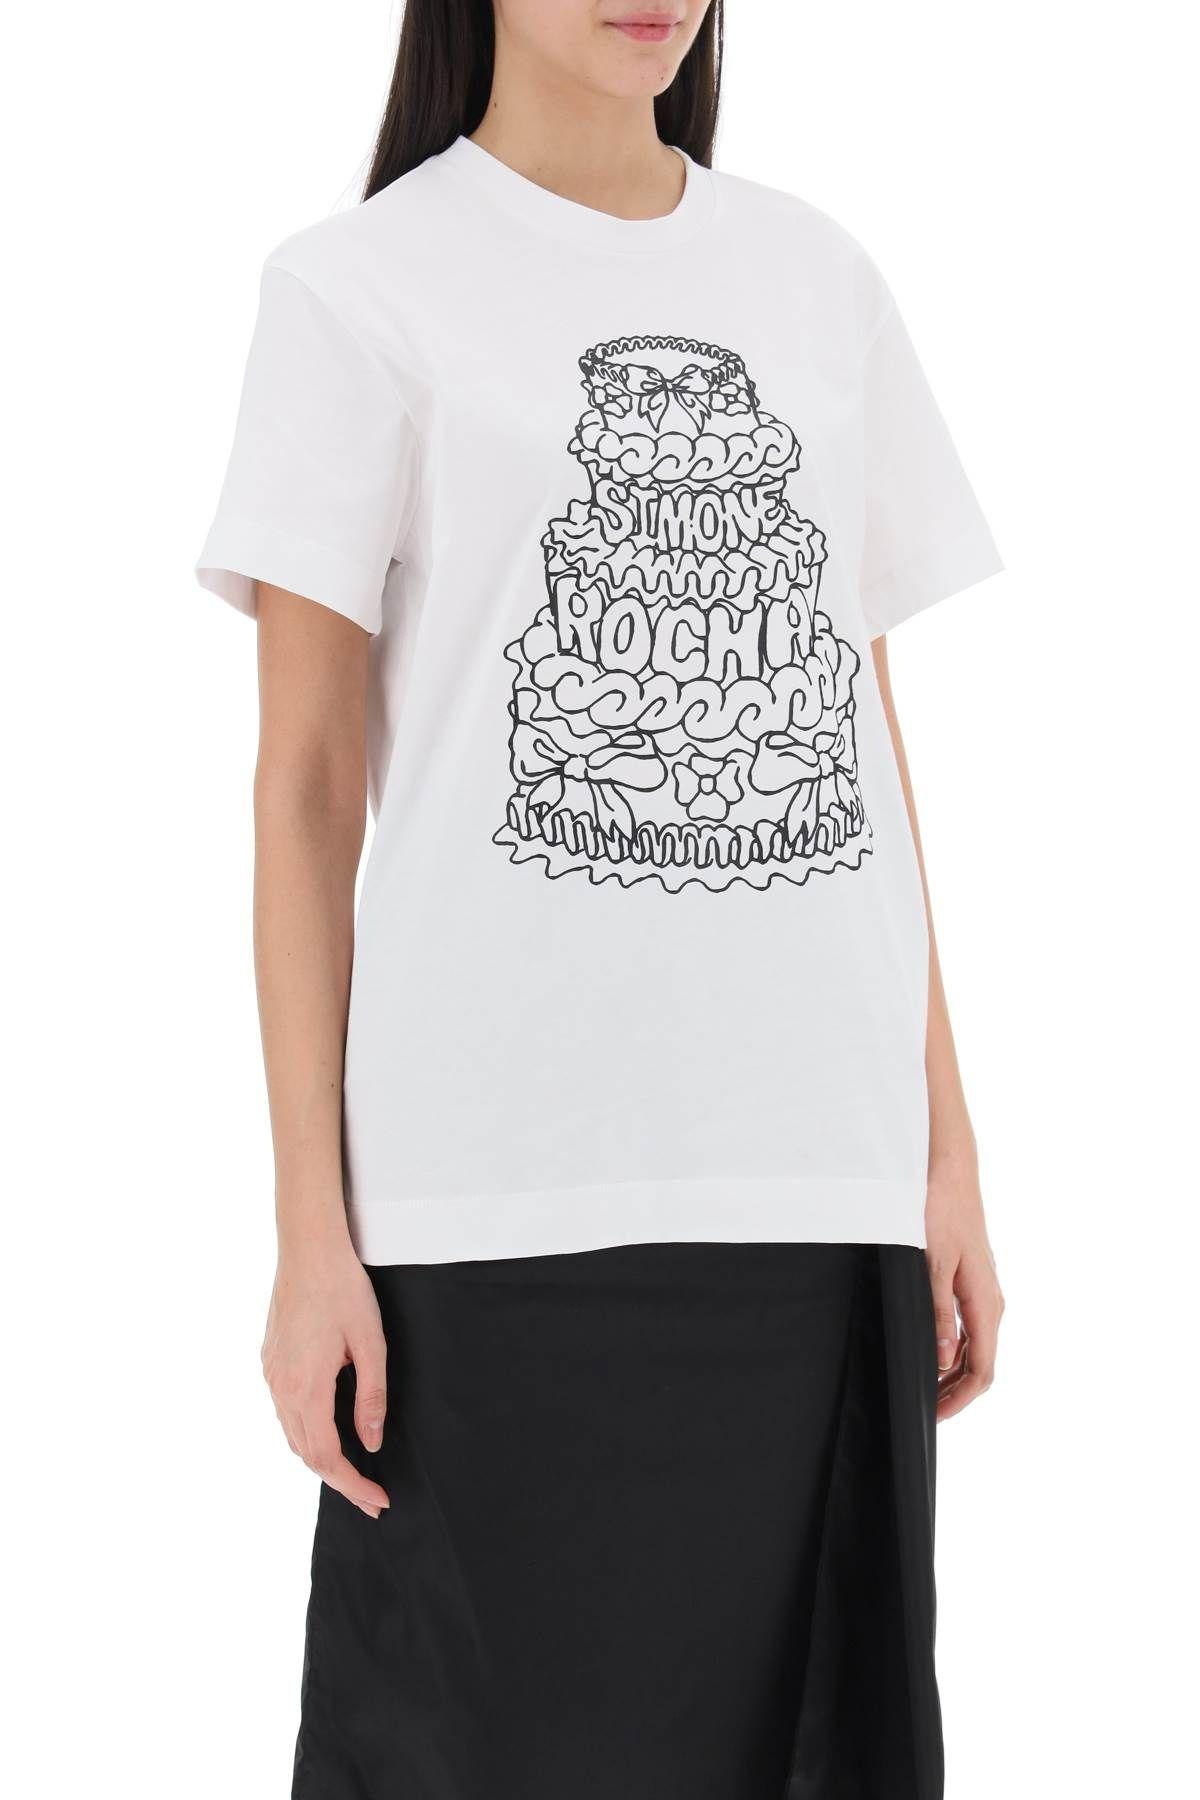 "Round neck Cake T-shirt" Simone Rocha - 3